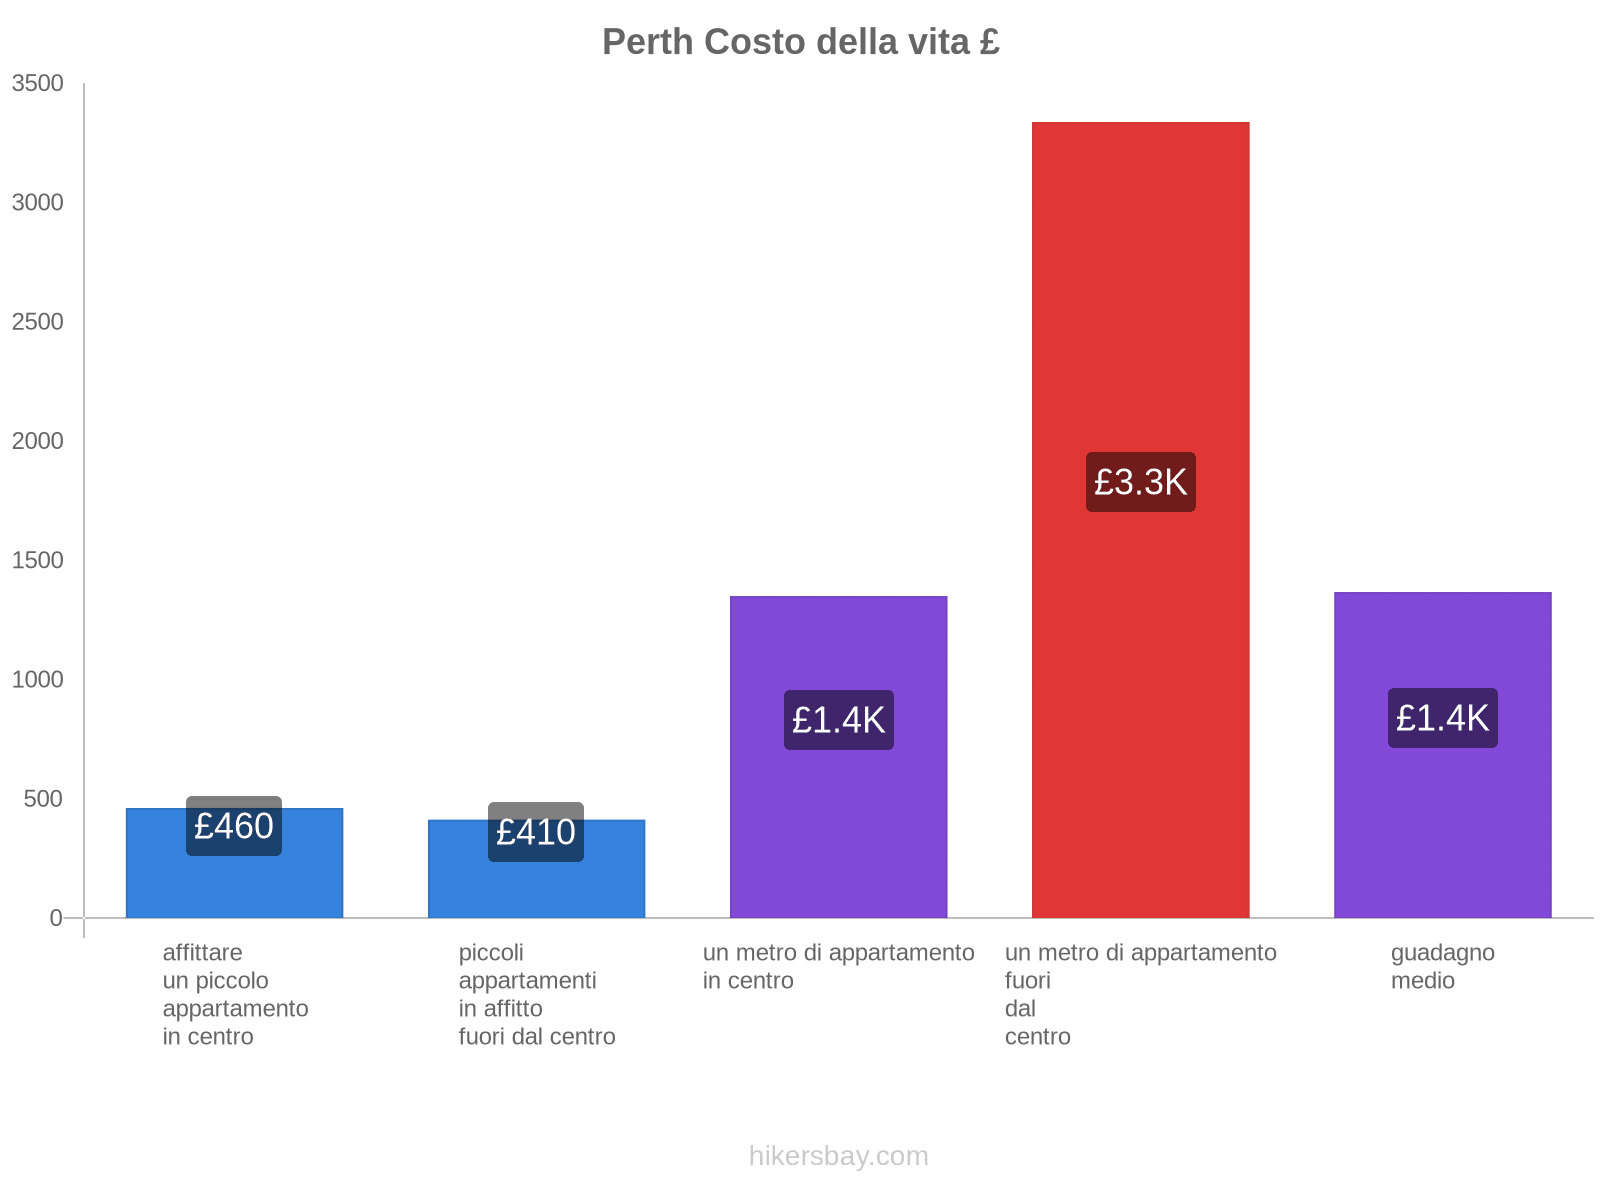 Perth costo della vita hikersbay.com